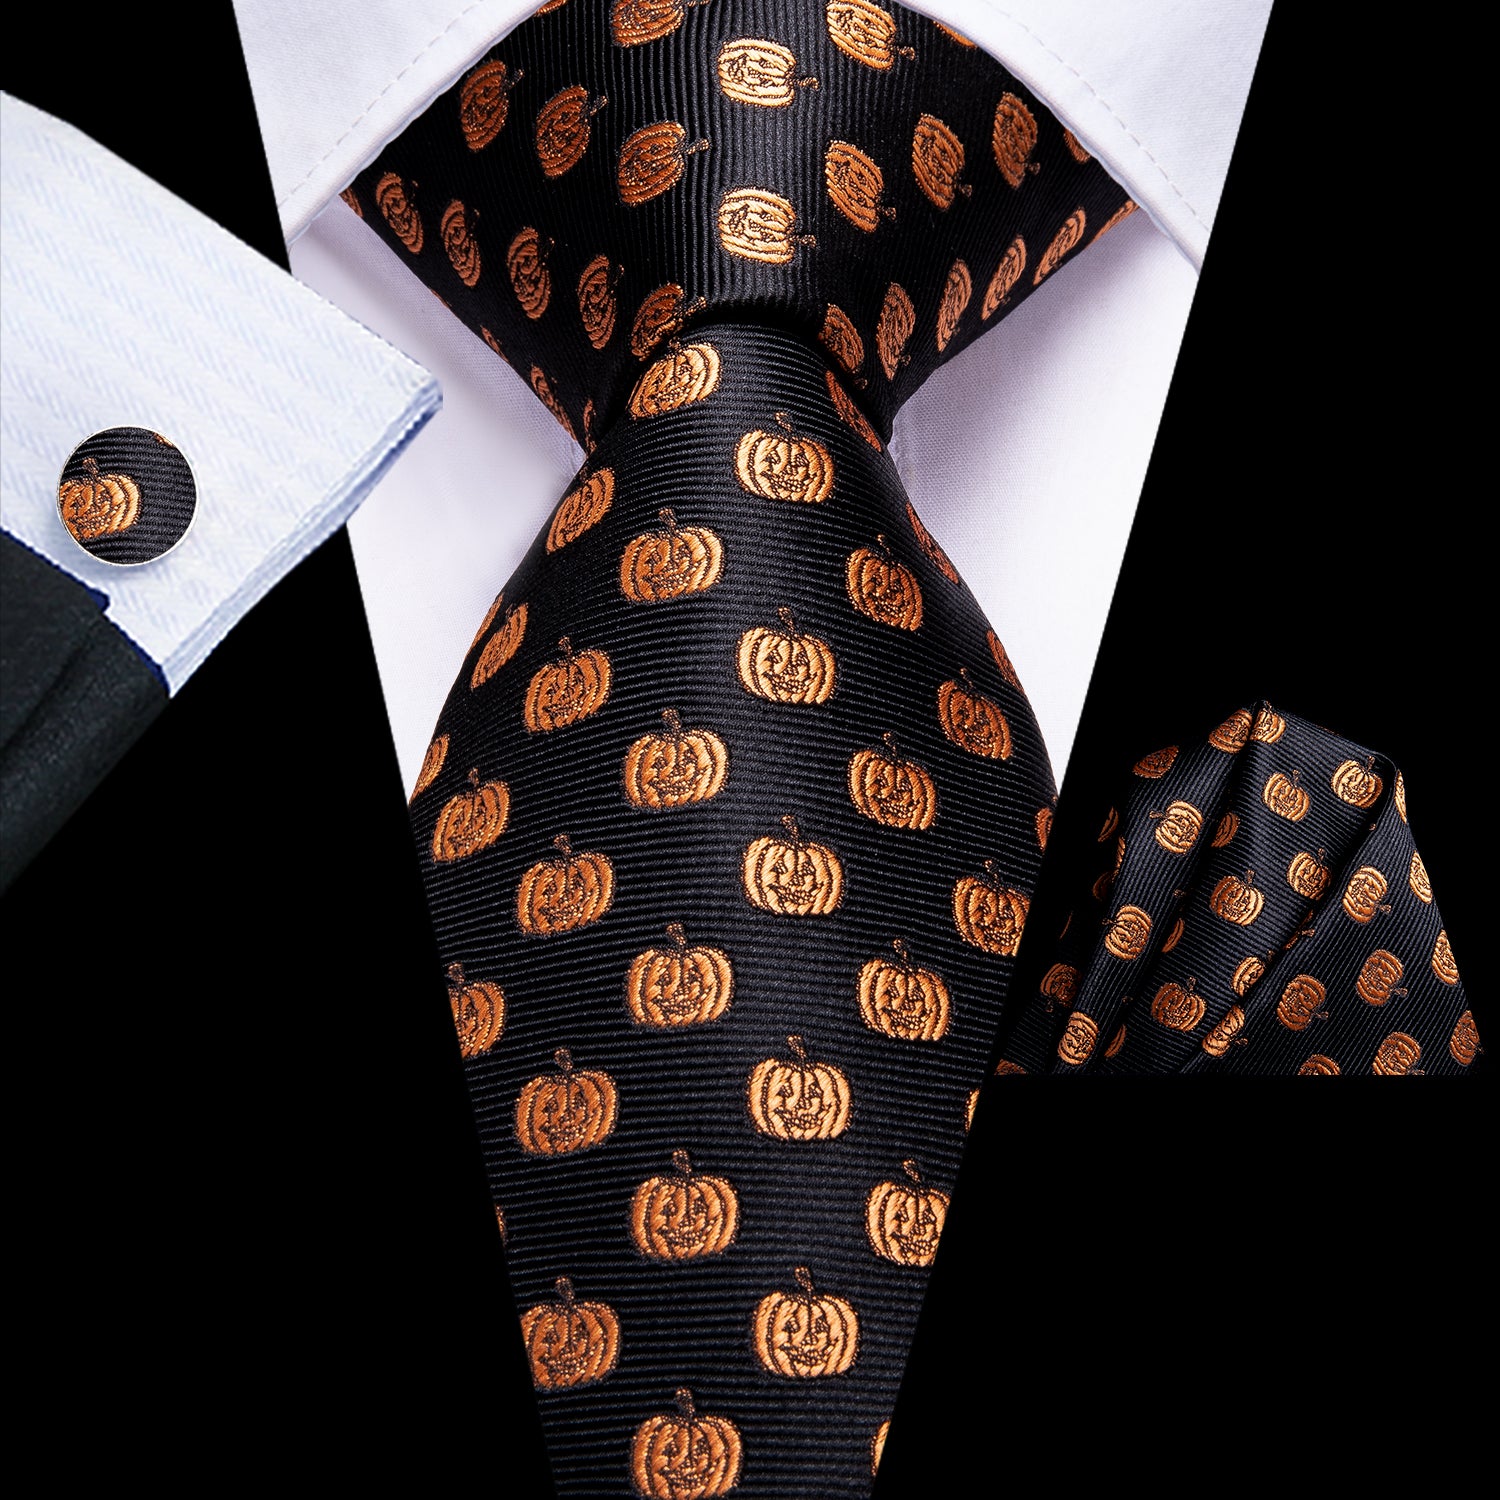 Black Golden Smiley Face Tie Pocket Square Cufflinks Set